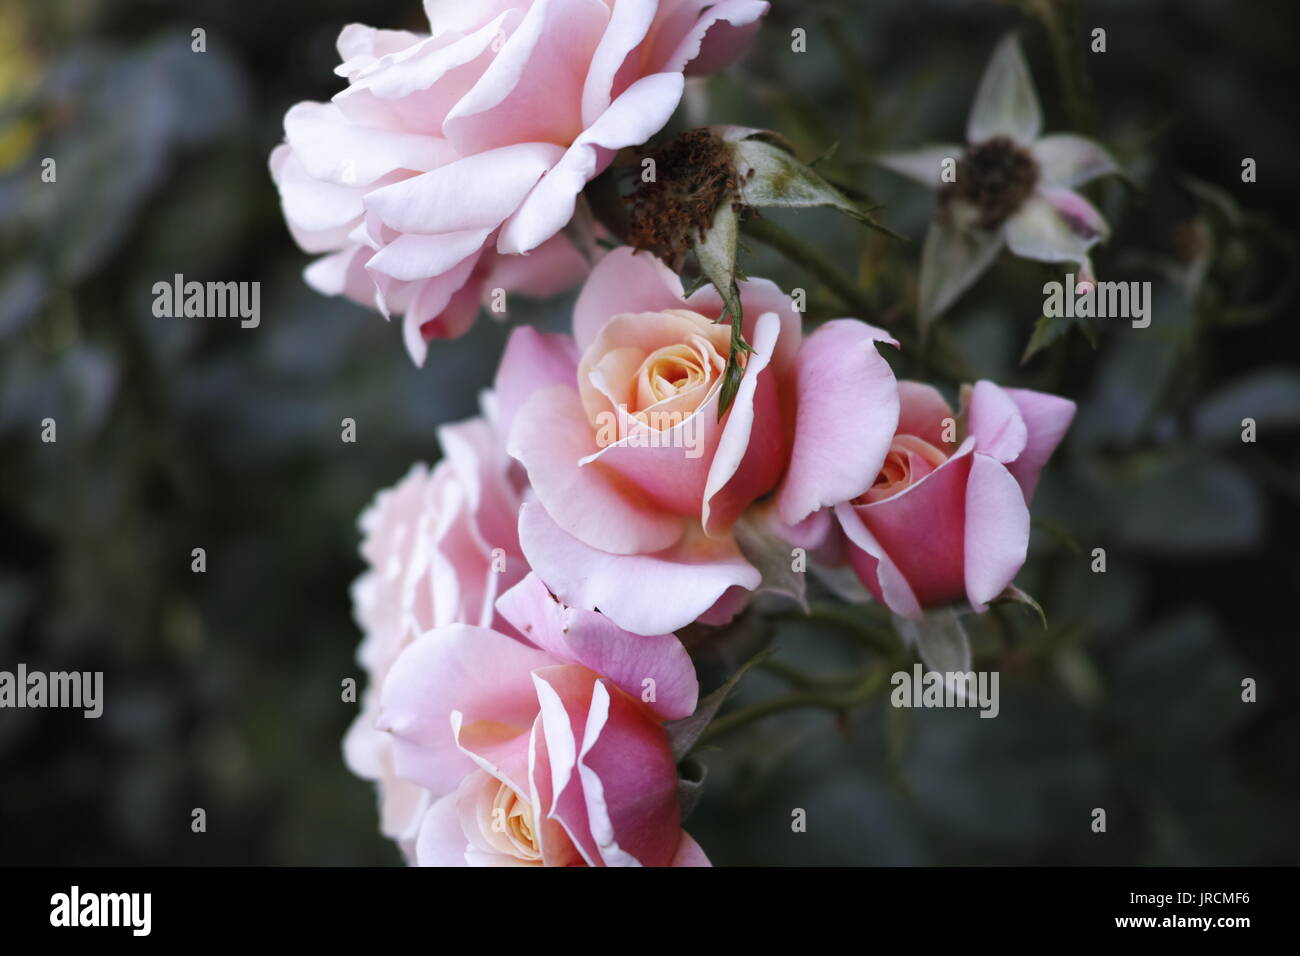 Eine Nahaufnahme Makroaufnahme eines Bündels von Pfirsich und rosa Rosen zu einem Busch. Stockfoto